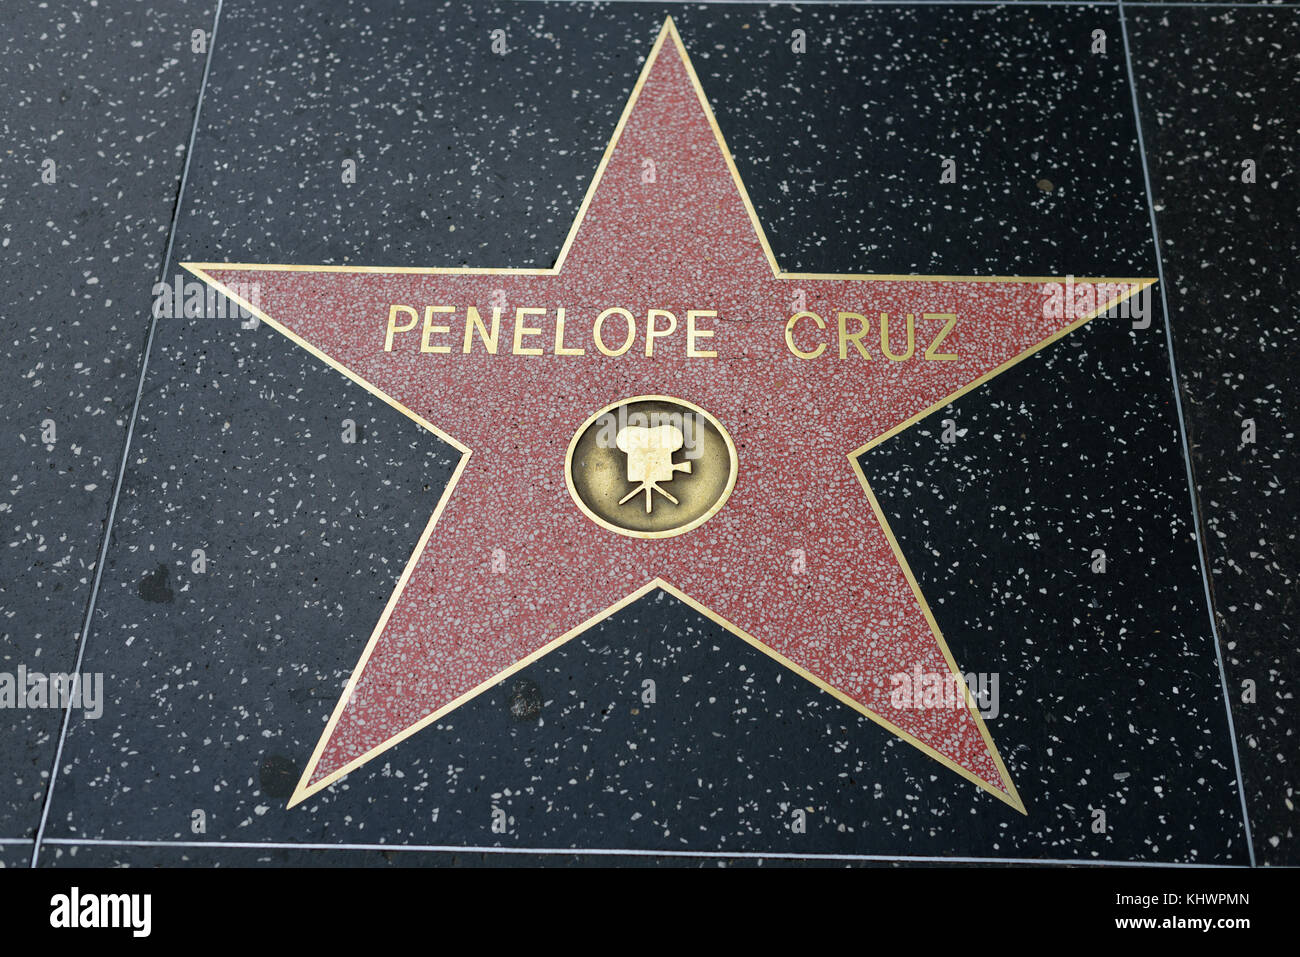 HOLLYWOOD, CA - DEZEMBER 06: Penelope Cruz Star auf dem Hollywood Walk of Fame in Hollywood, Kalifornien am 6. Dezember 2016. Stockfoto